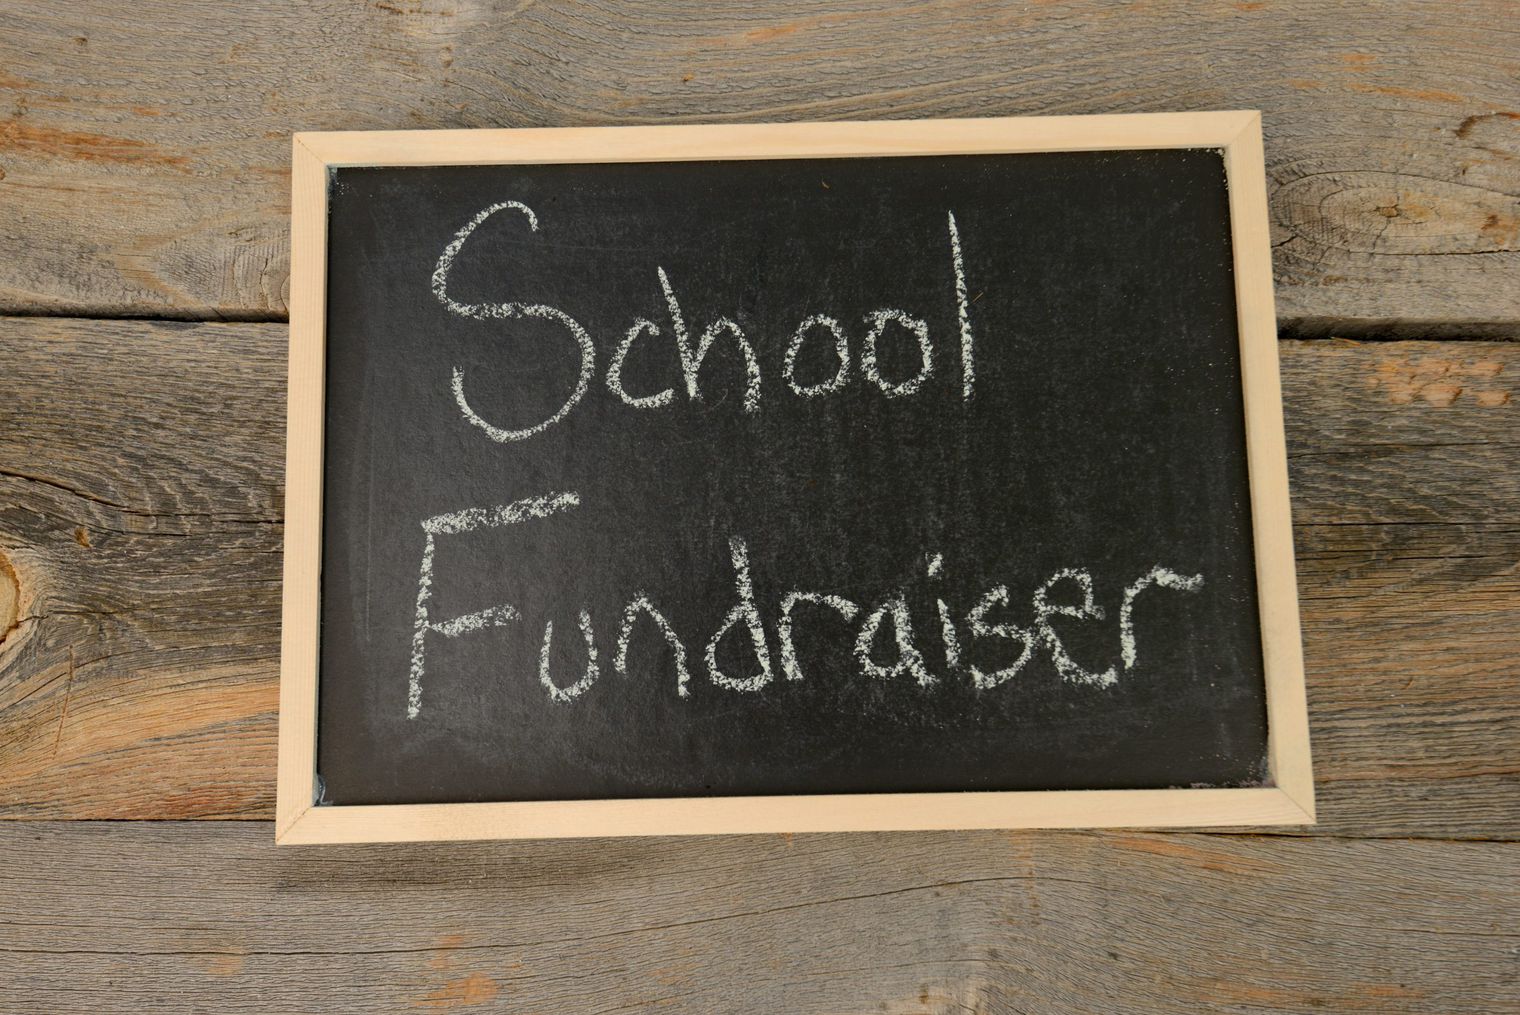 School Fundraiser written in white chalk on black chalkboard